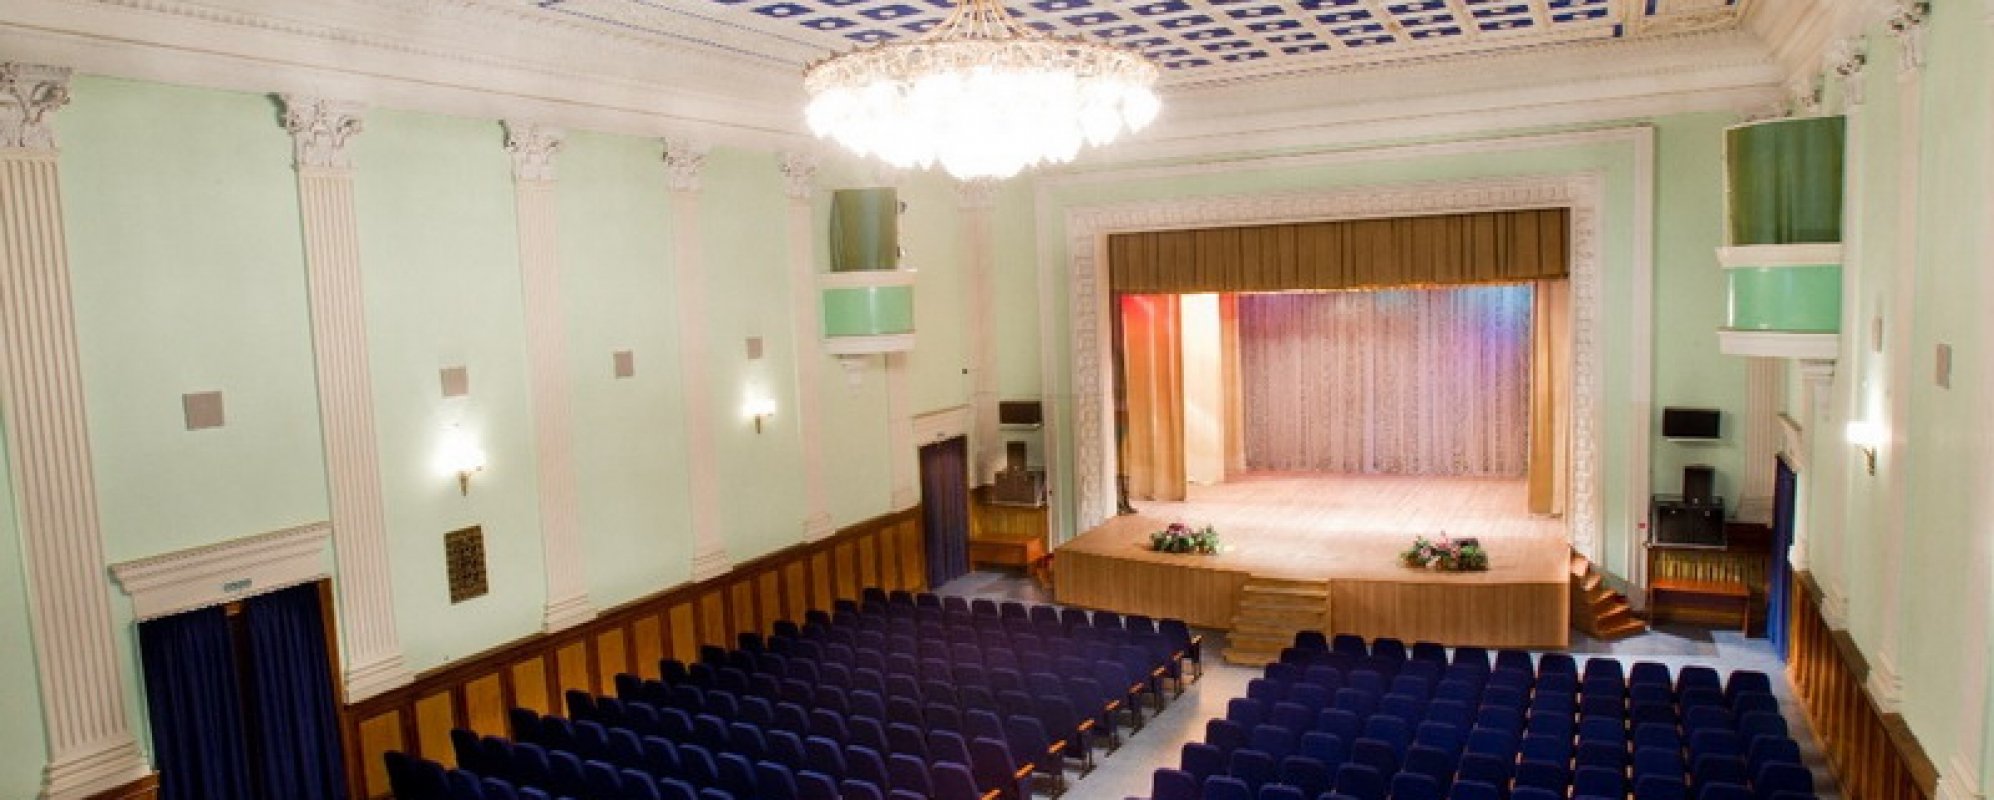 Фотографии концертного зала Концертный зал ДК железнодорожников